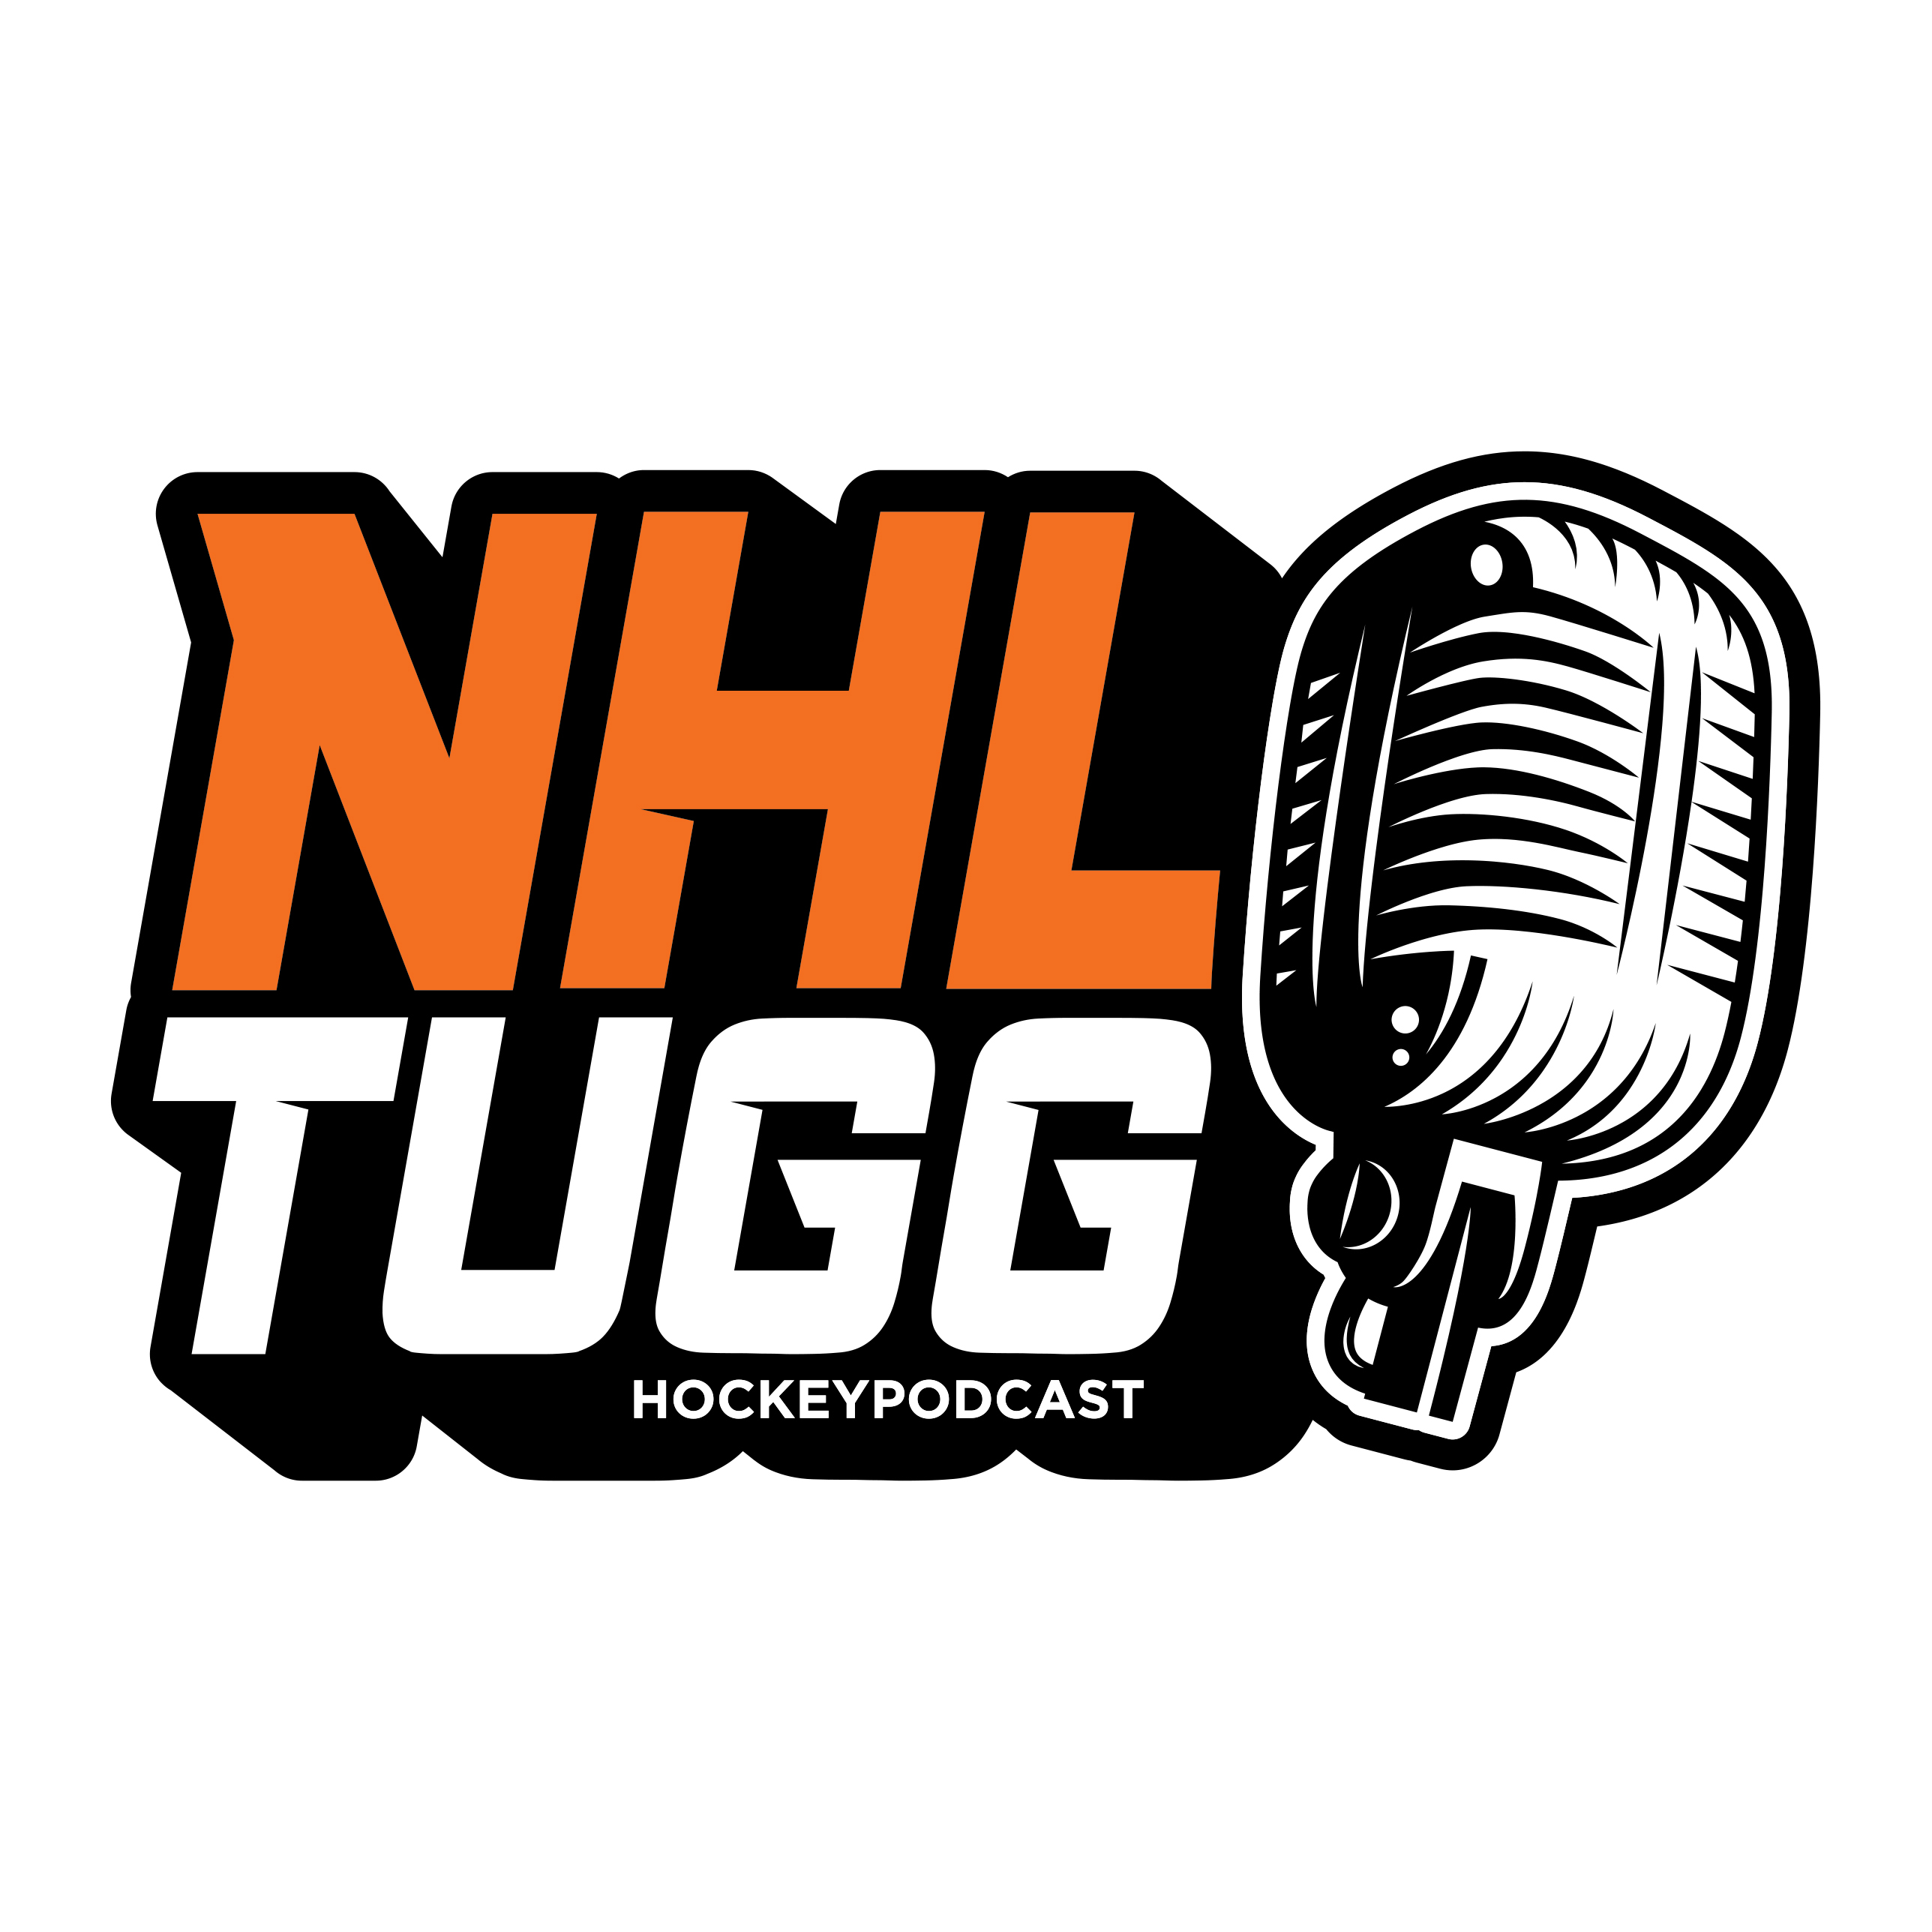 NHL-Tugg avsnitt 68 “Siri - Jag tror inte jag förstår”